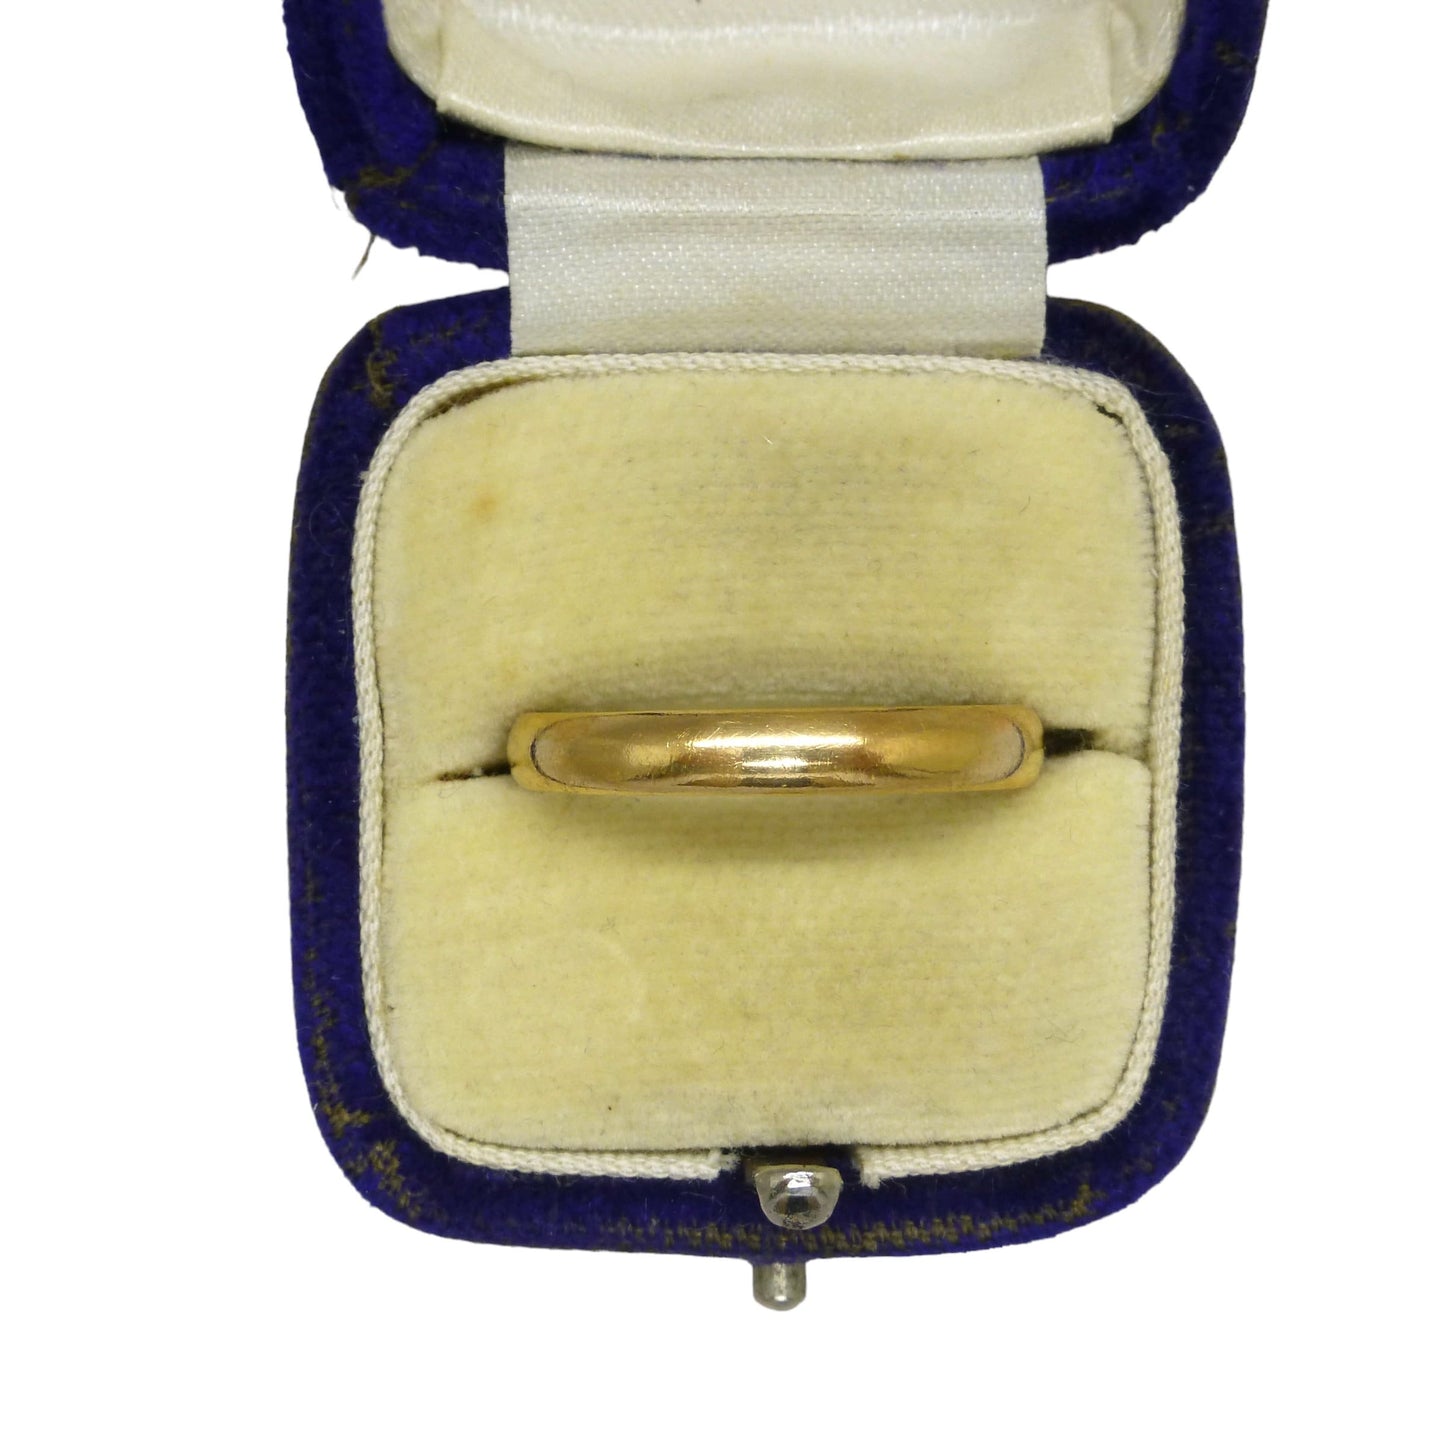 Vintage English 22ct gold wedding ring c1950's ~ gold stacking band 5.2 grams